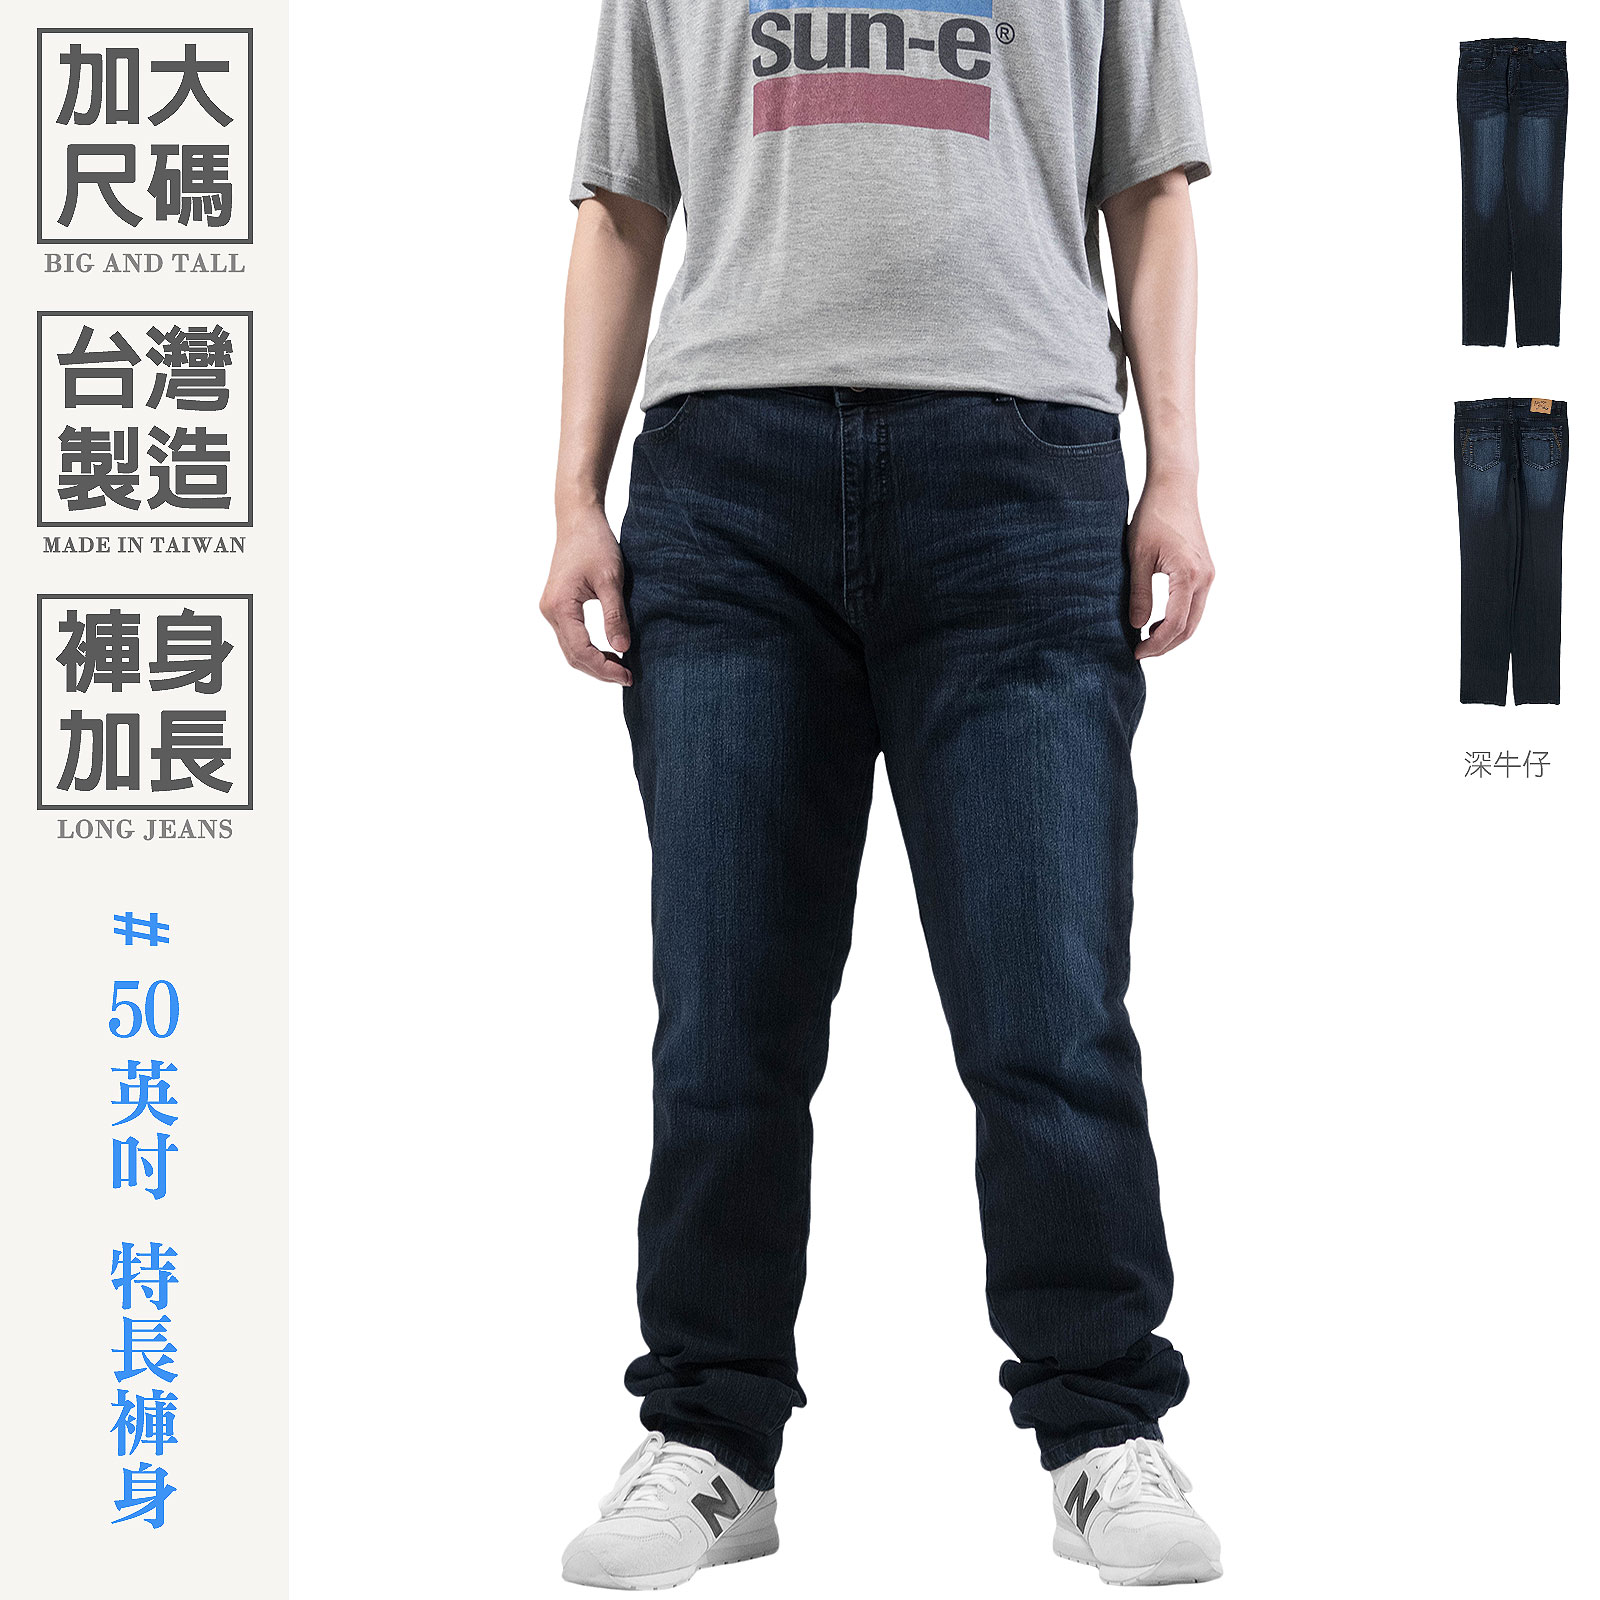 加大尺碼牛仔褲 台灣製牛仔褲 褲長加長牛仔褲 彈性直筒牛仔長褲 躼跤牛仔褲 百貨公司等級丹寧長褲 大尺碼長褲 大腰牛仔褲 直筒褲 YKK拉鍊 車繡後口袋 Big And Tall Made In Taiwan Jeans Long Jeans Regular Fit Jeans Denim Pants Stretch Jeans Embroidered Pockets (345-5925-21)深牛仔 腰圍:42~50英吋 (107~127公分) 男 [實體店面保障] sun-e